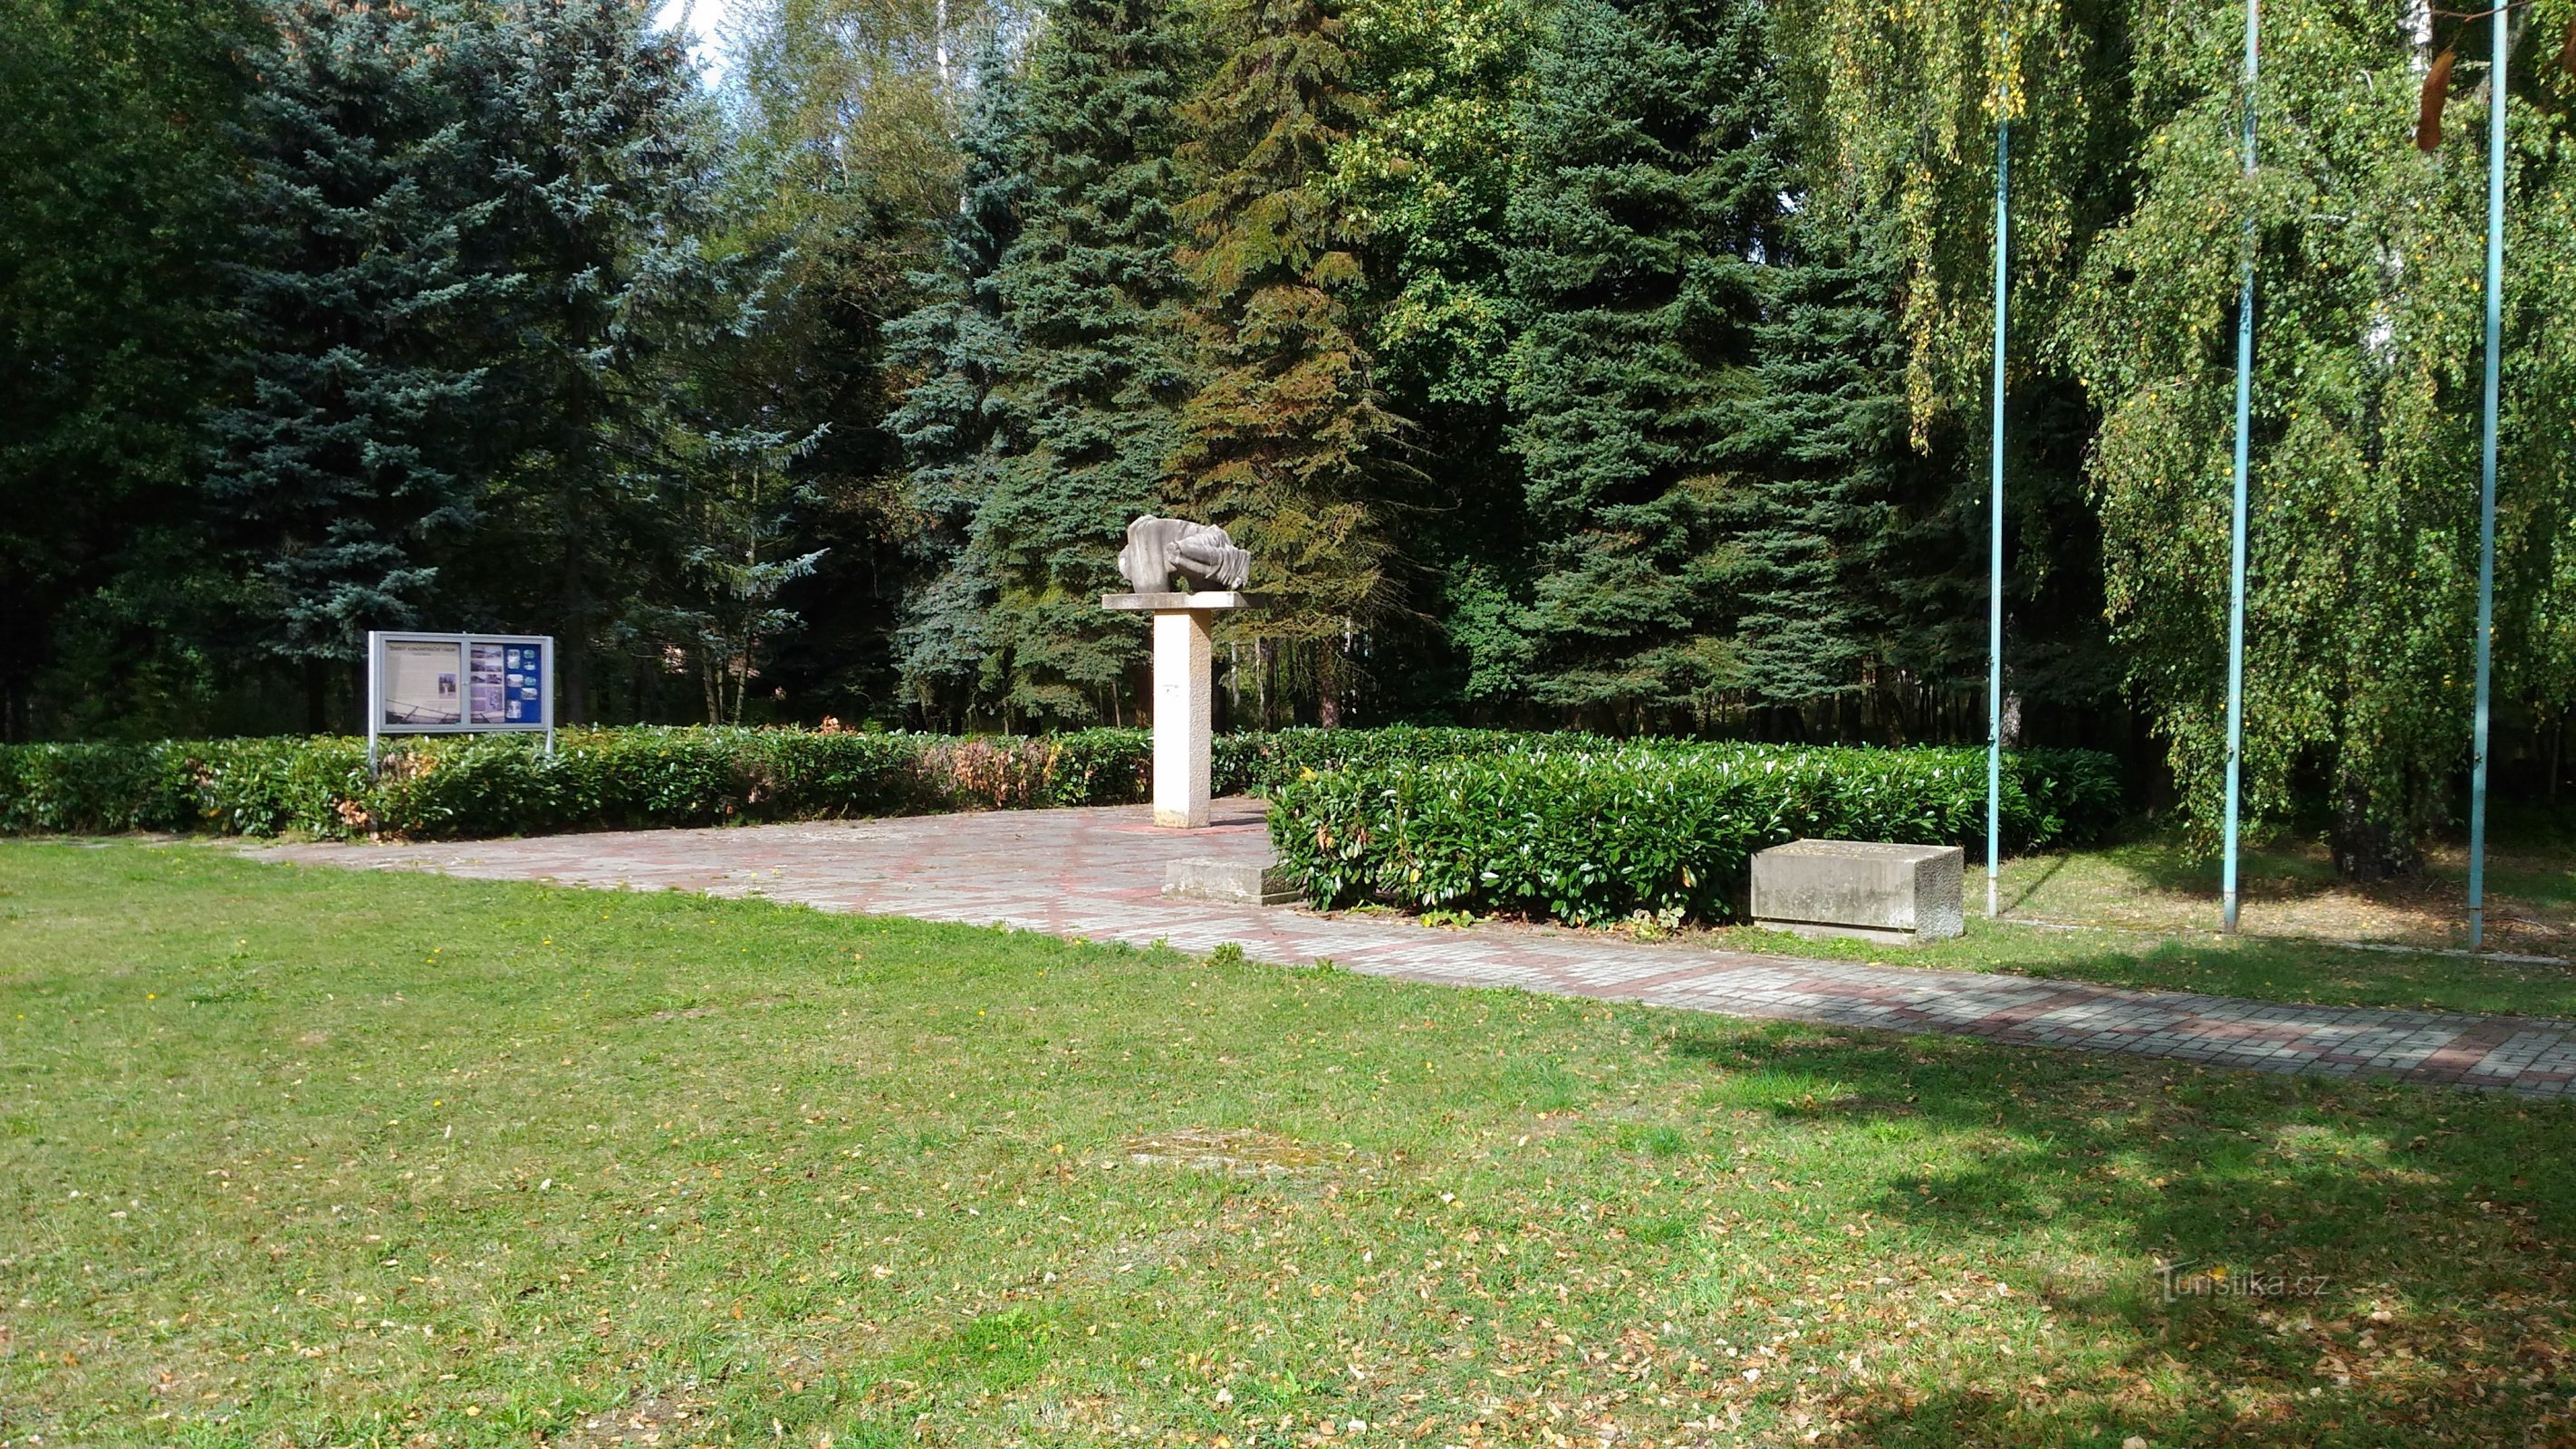 Памятник женскому концентрационному лагерю в Сватаве.